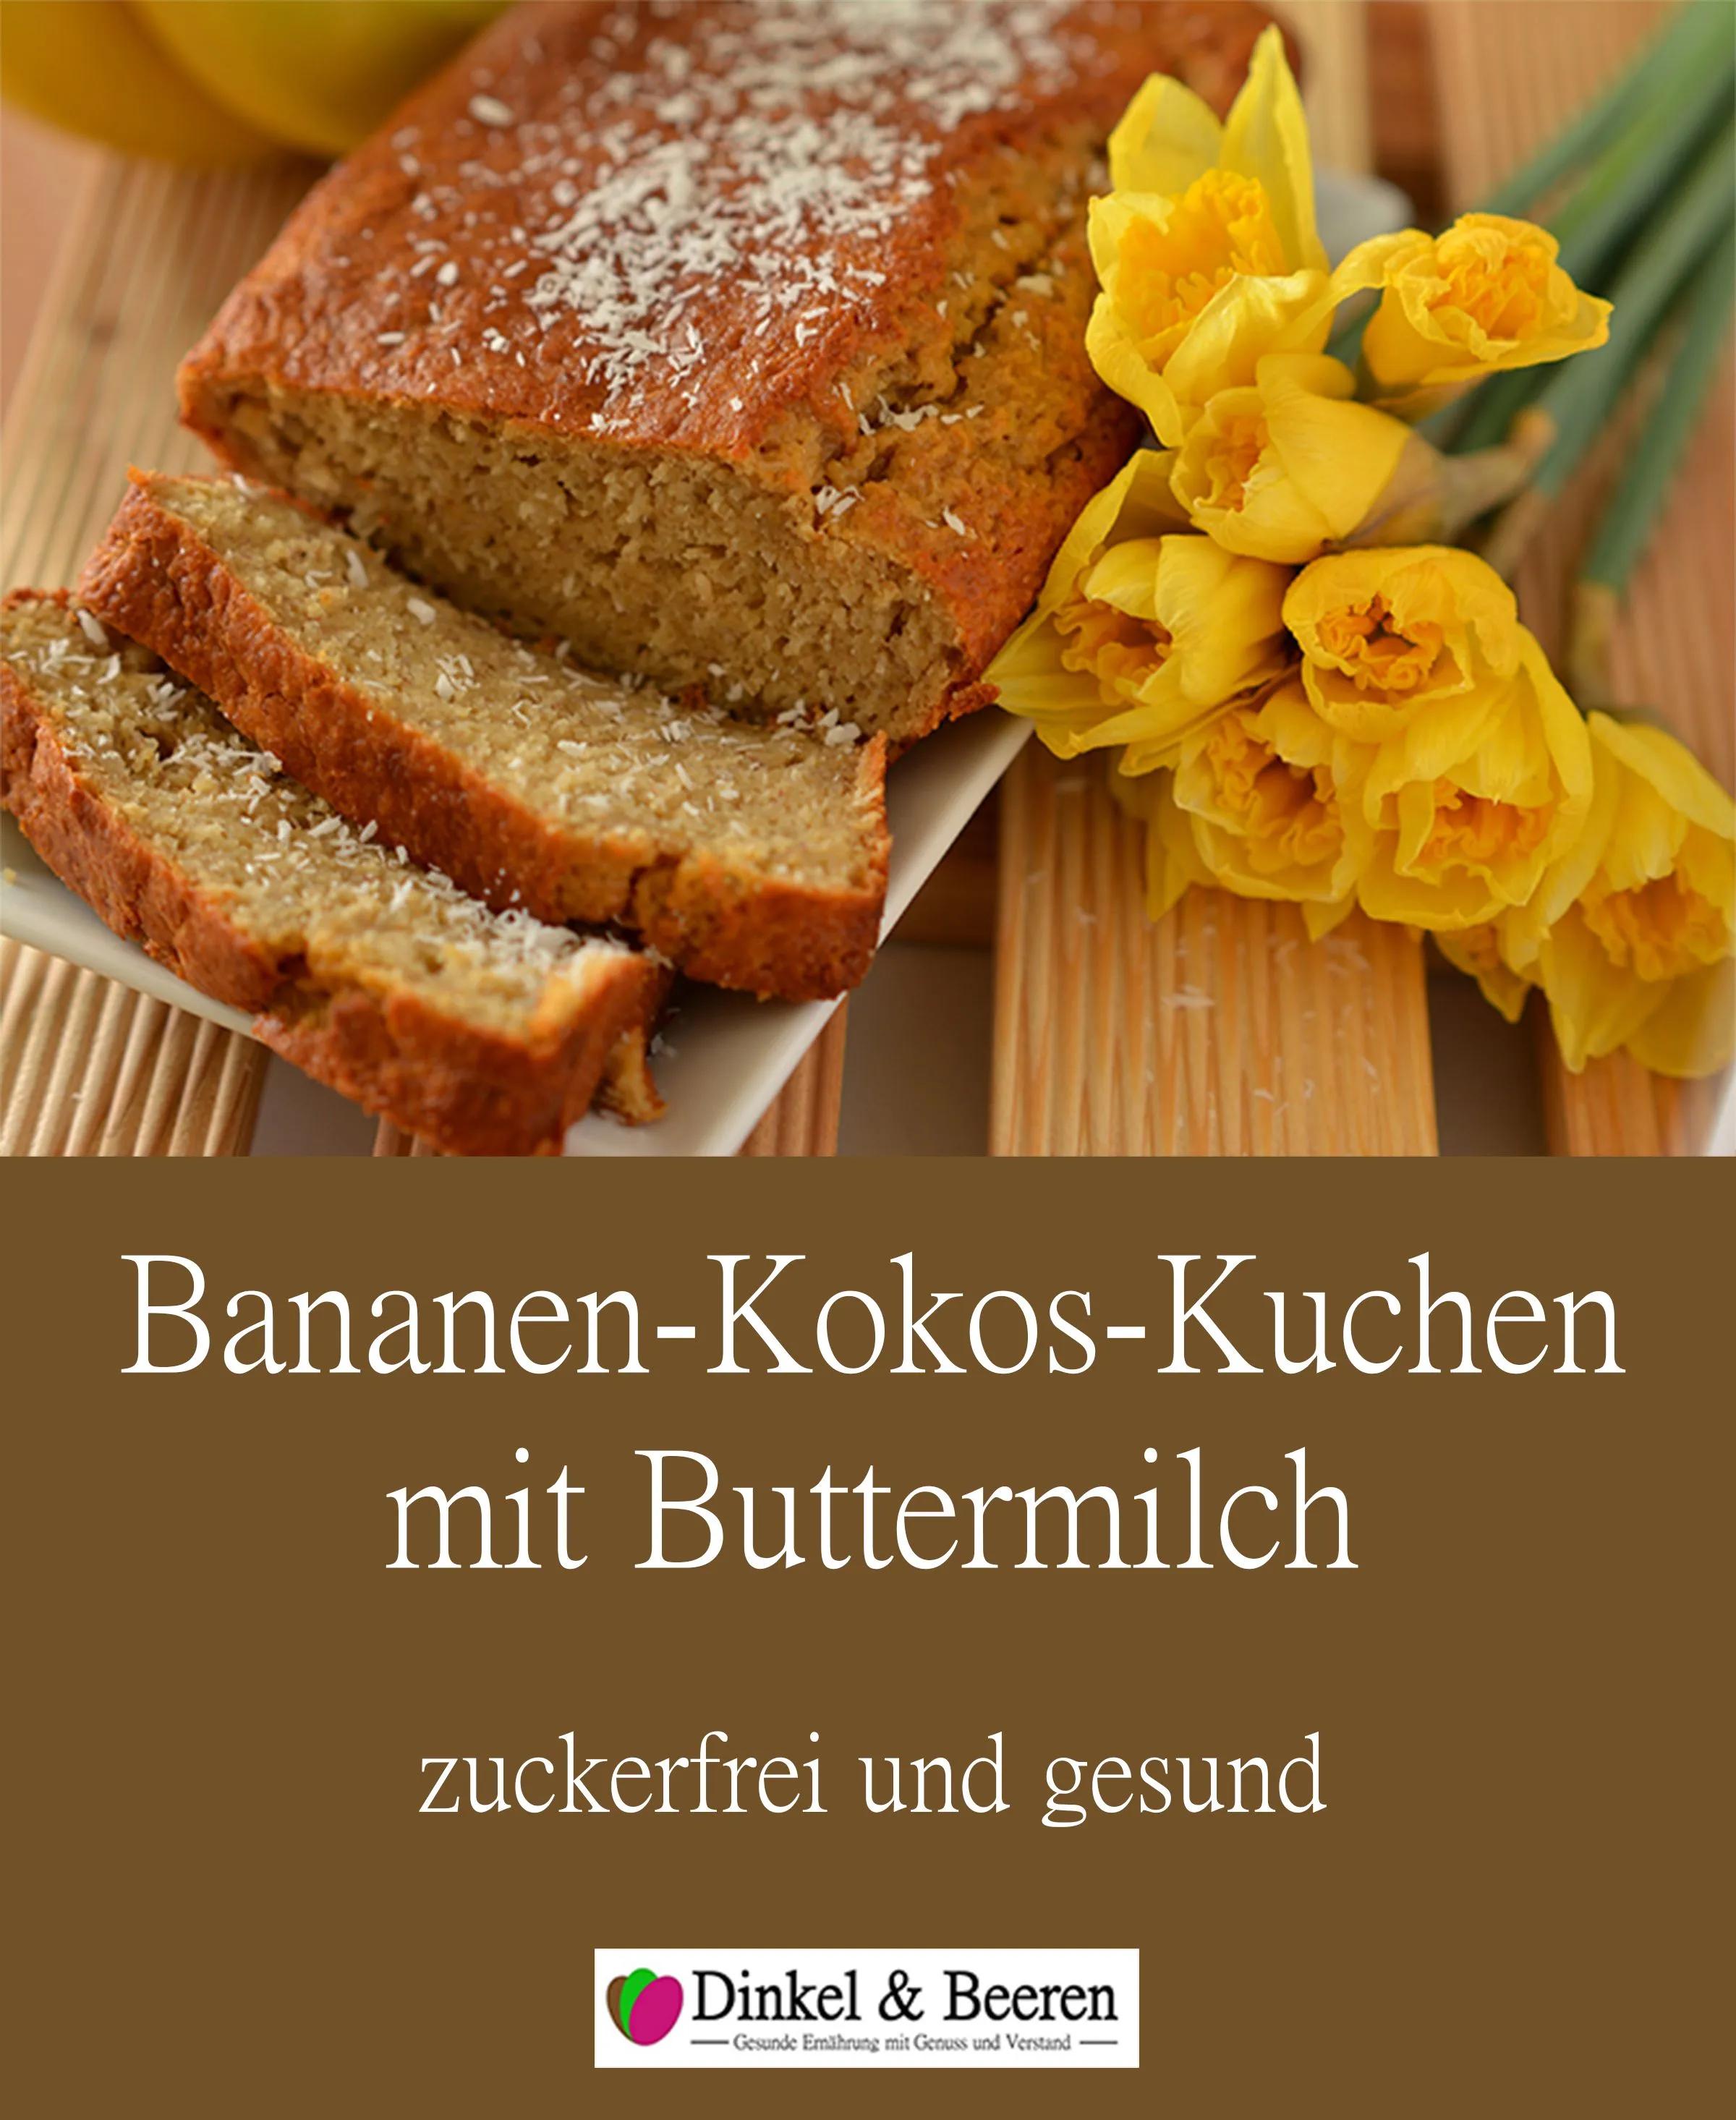 Bananen-Kokos-Kuchen mit Buttermilch | Dinkel &amp; Beeren | Lebensmittel ...